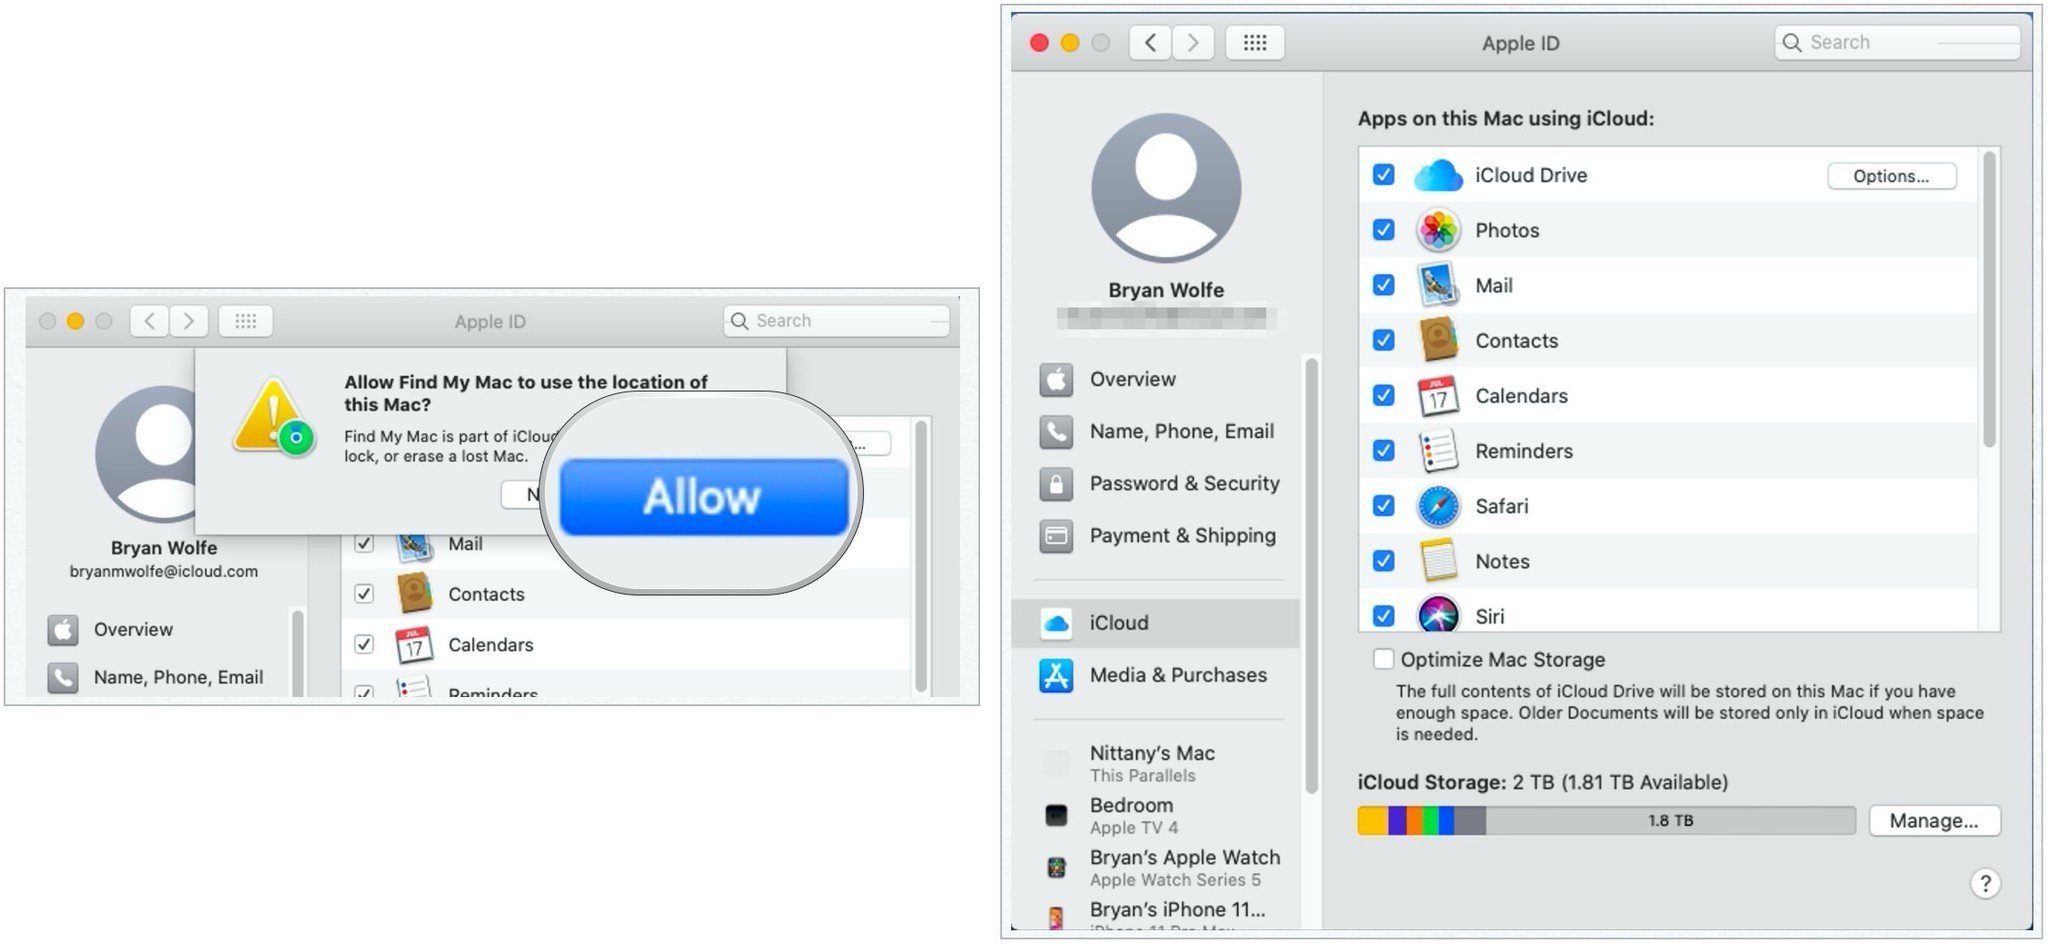 Чтобы настроить iCloud на Mac, выберите «Разрешить», затем подтвердите флажки рядом со всеми приложениями, использующими iCloud.